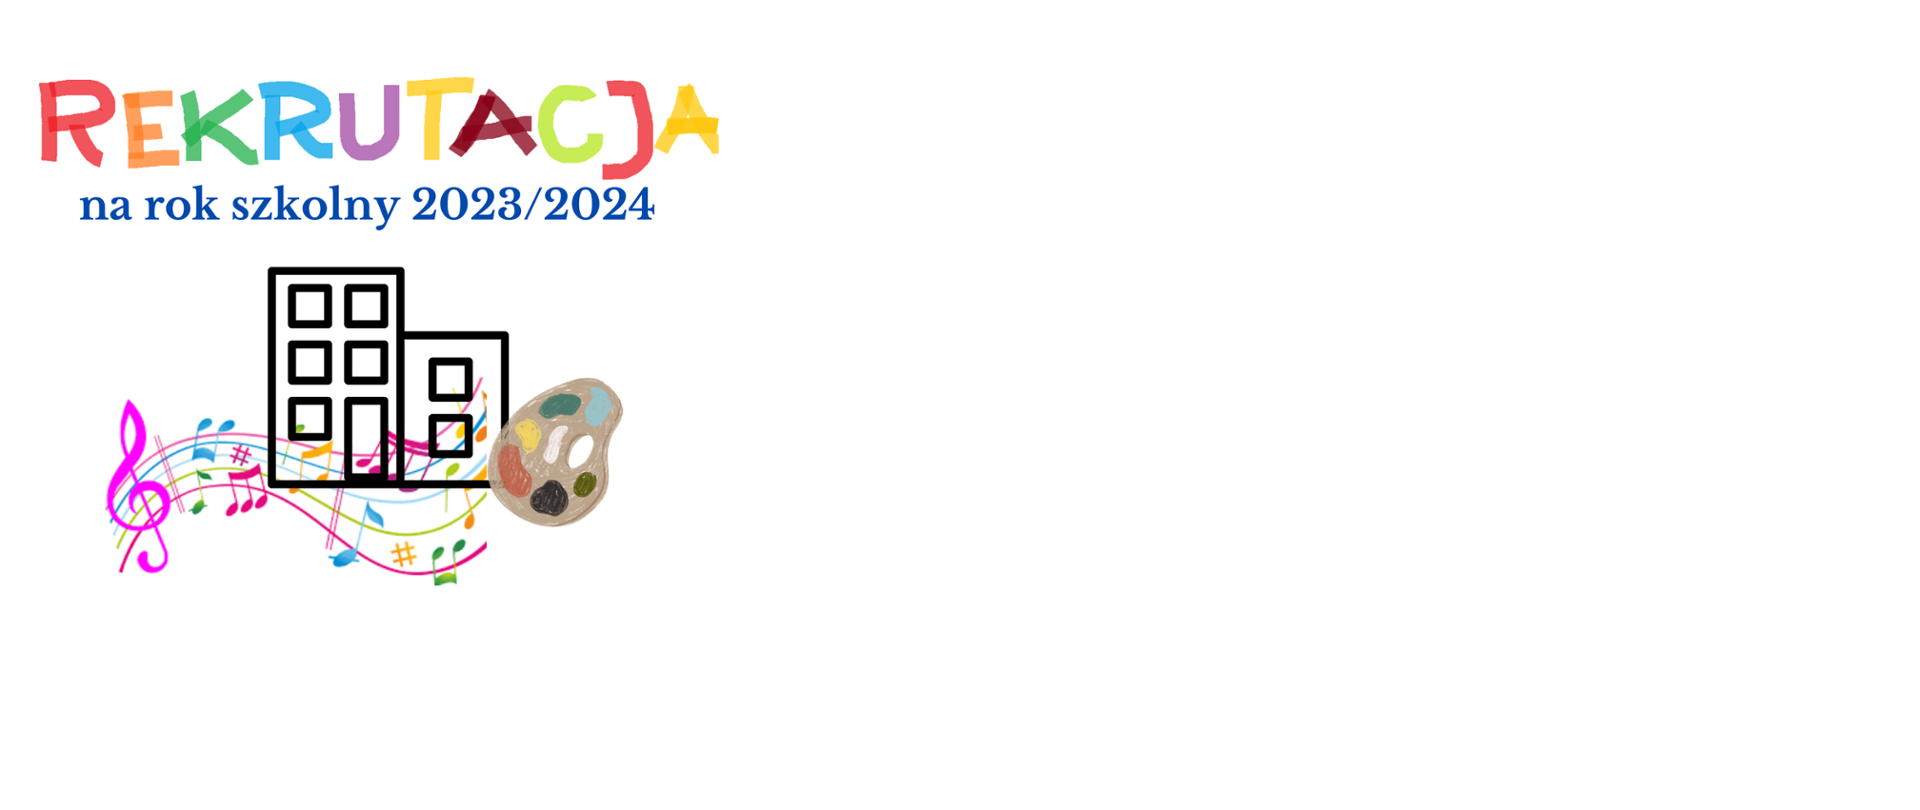 banertreklamowy informujący o rekrutacji na rok szkolny 2023/2024, w prawym dolnym rogu grafika przedstawiająca paletę farb, w lewym dolnym rogu grafika przedstawiająca różowy klucz wiolinowy i kolorowe nutki, pomiędzy nimi ikona budynku w kolorze czarnym, nad grafiką kolorowa informacja tekstowa